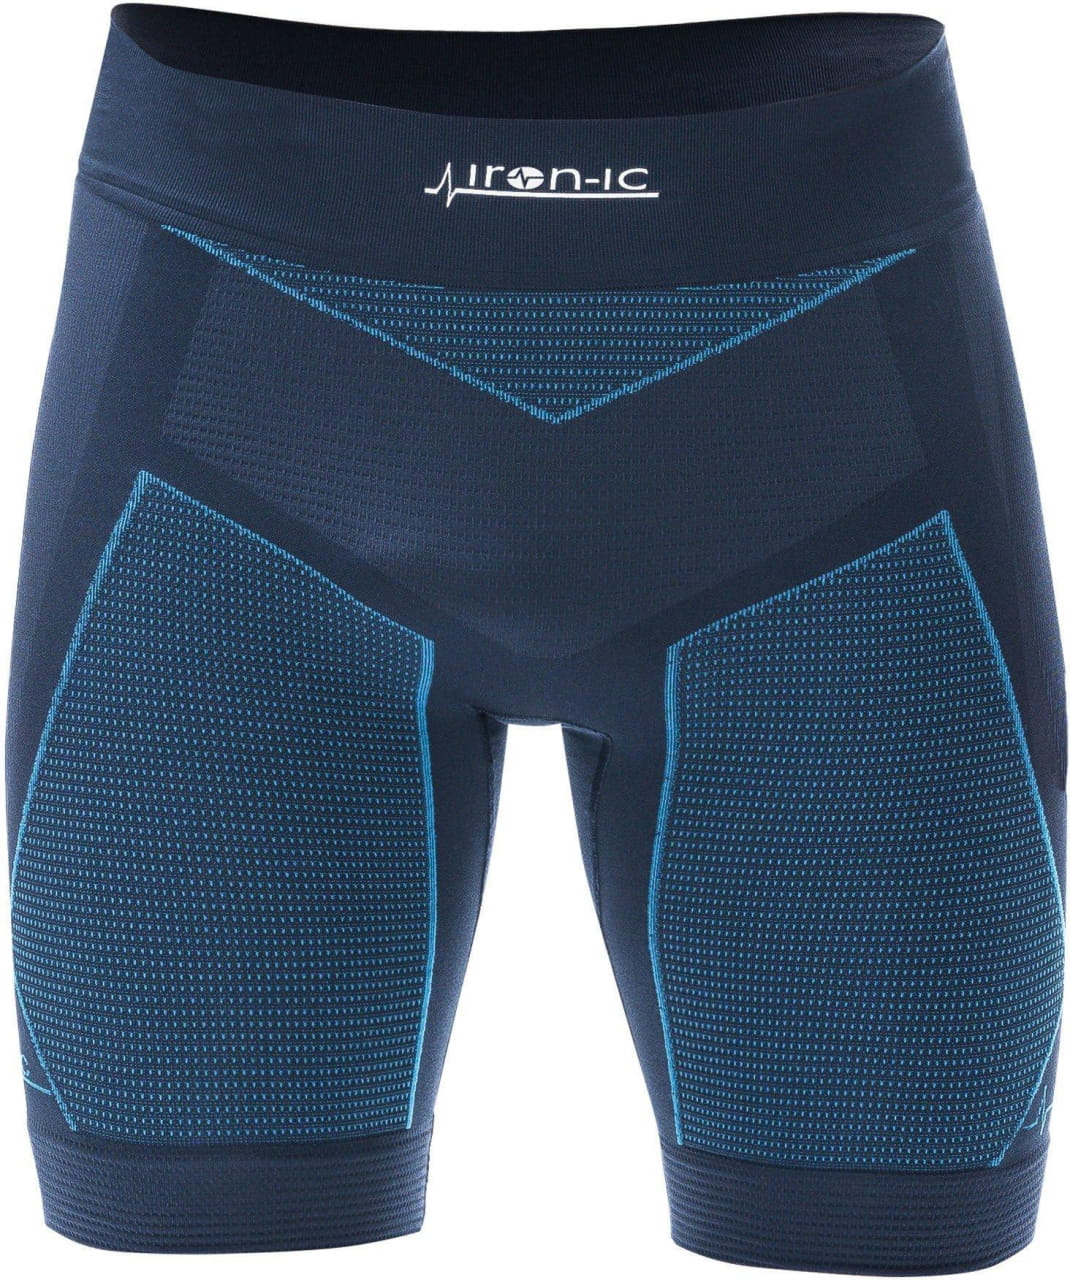 Anatomische Shorts für Männer Iron-ic Short Pant Man Running 6.0